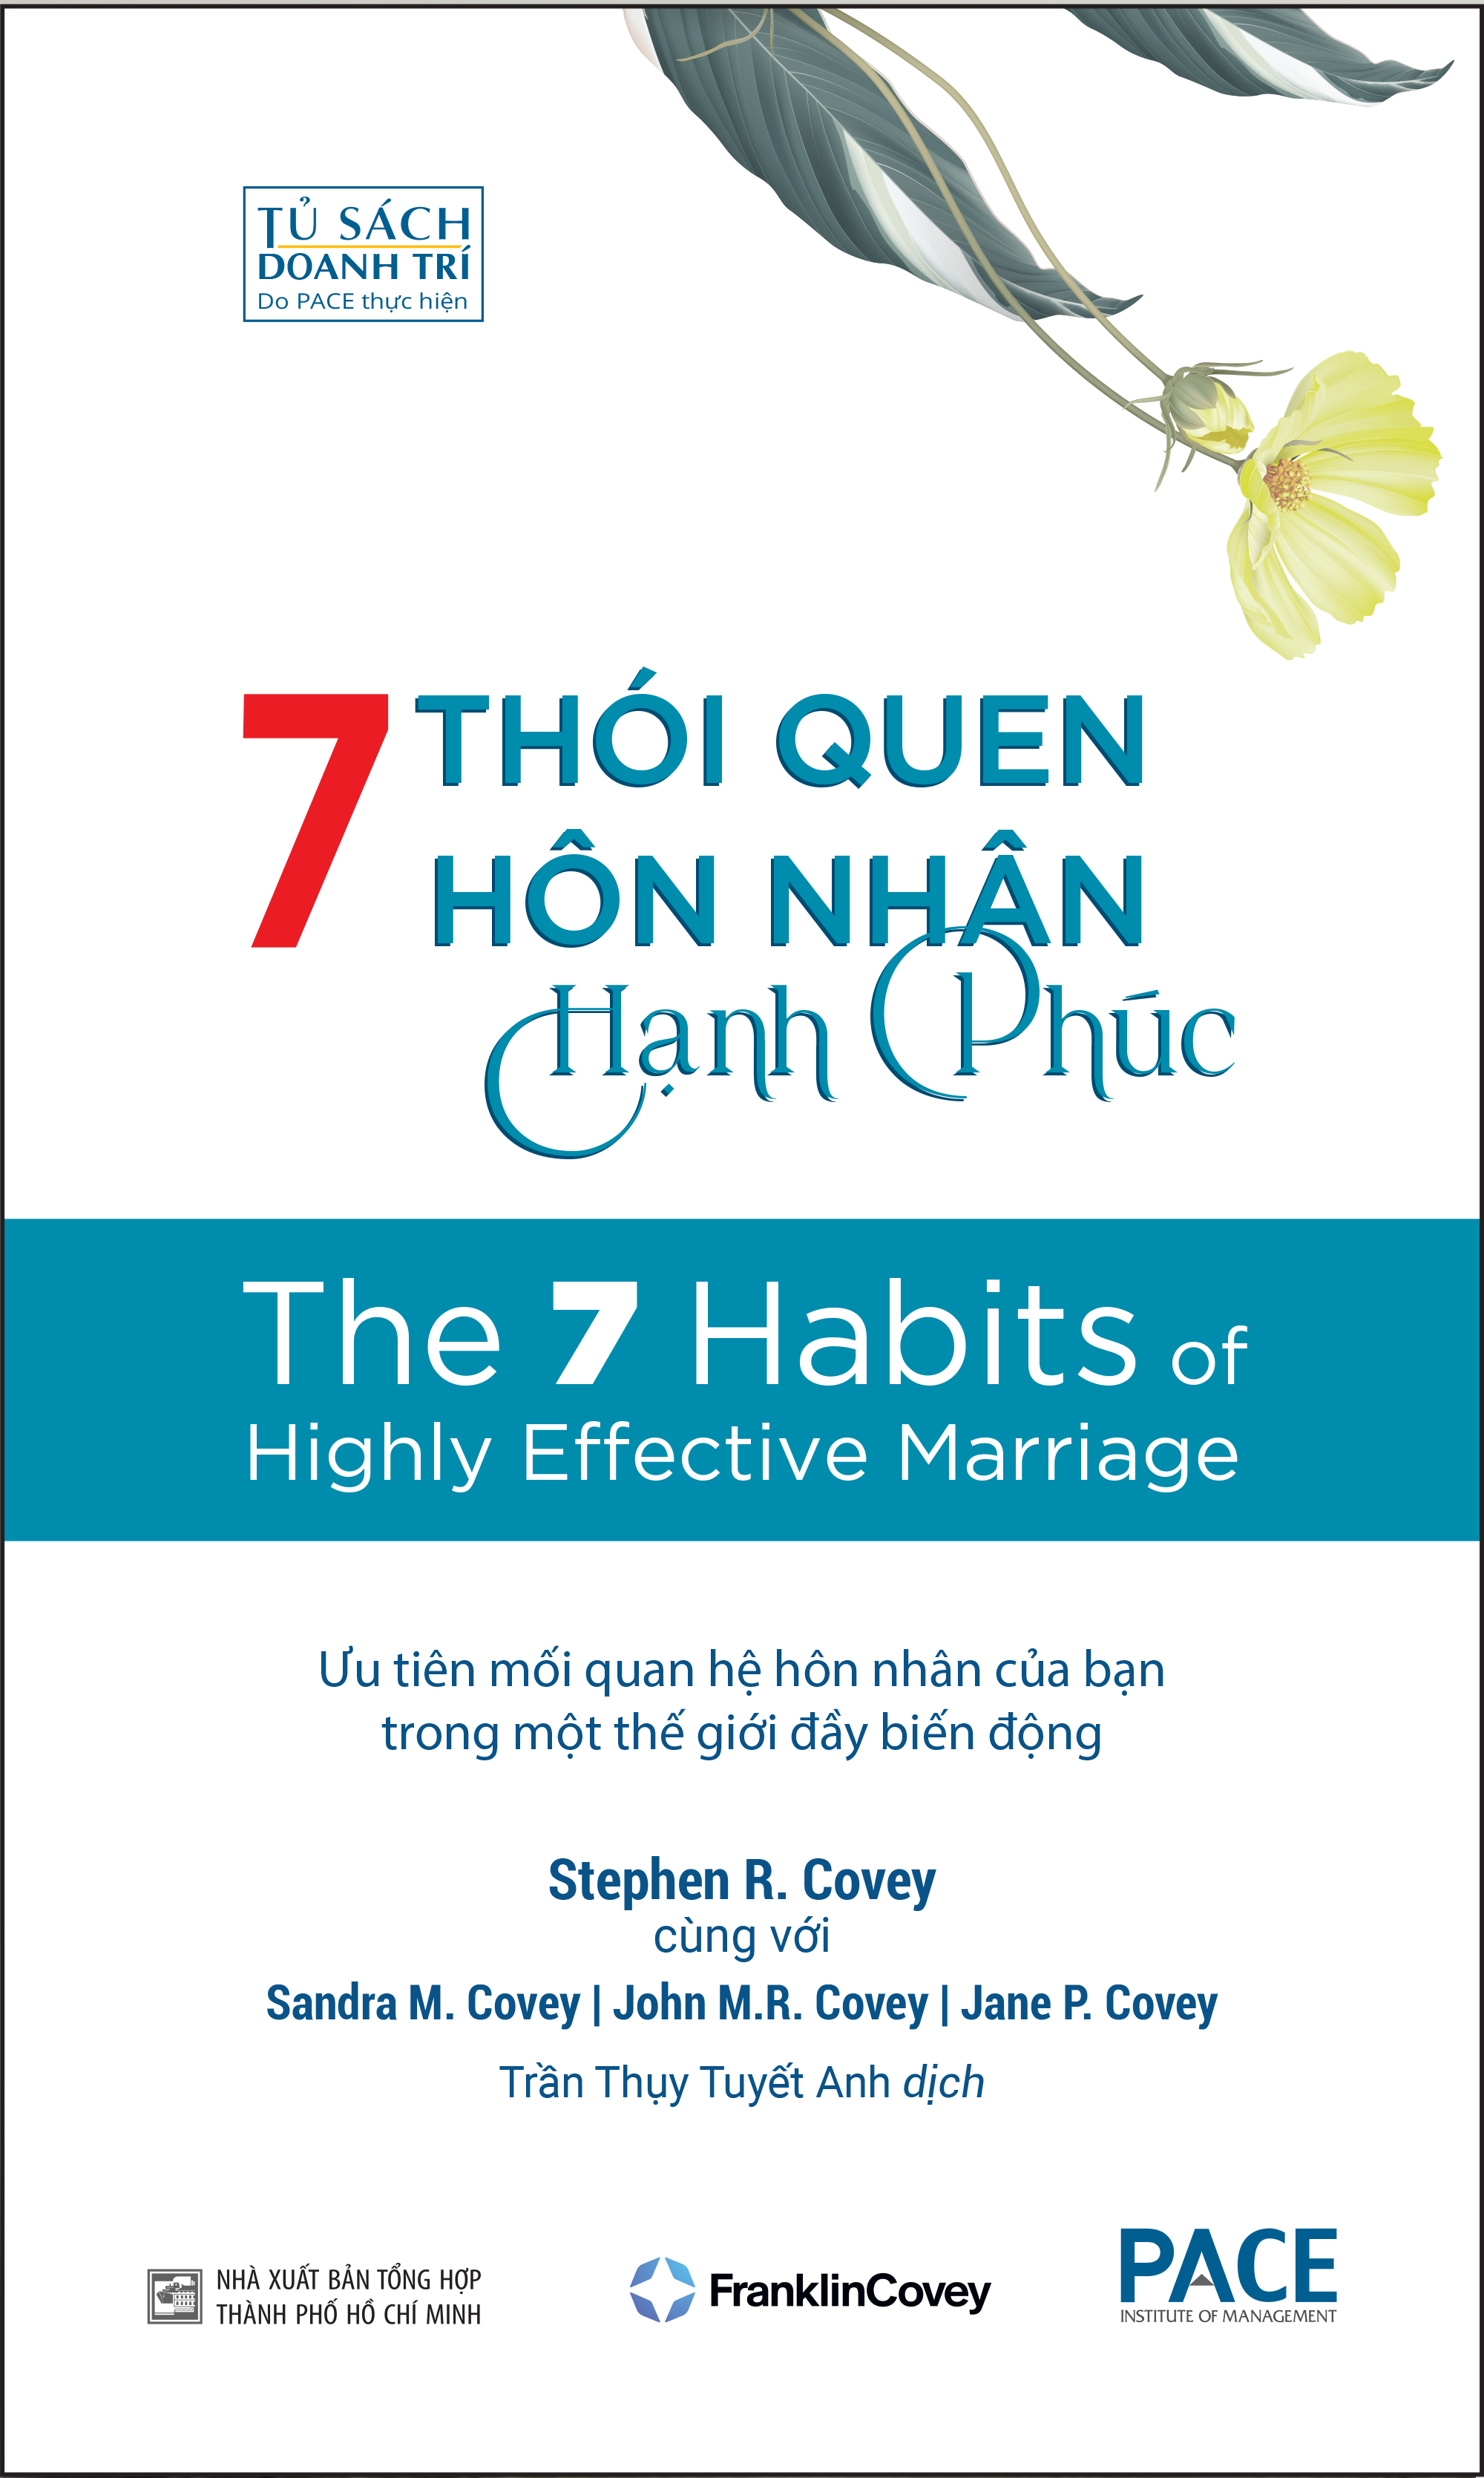 7 THÓI QUEN HÔN NHÂN HẠNH PHÚC (The 7 Habits of Highly Effective Marriage) - Stephen R. Covey, Sandra M. Covey, TS. John M.R. Covey, Jane P. Covey - Trần Thụy Tuyết Anh dịch - Tái bản - (bìa mềm)